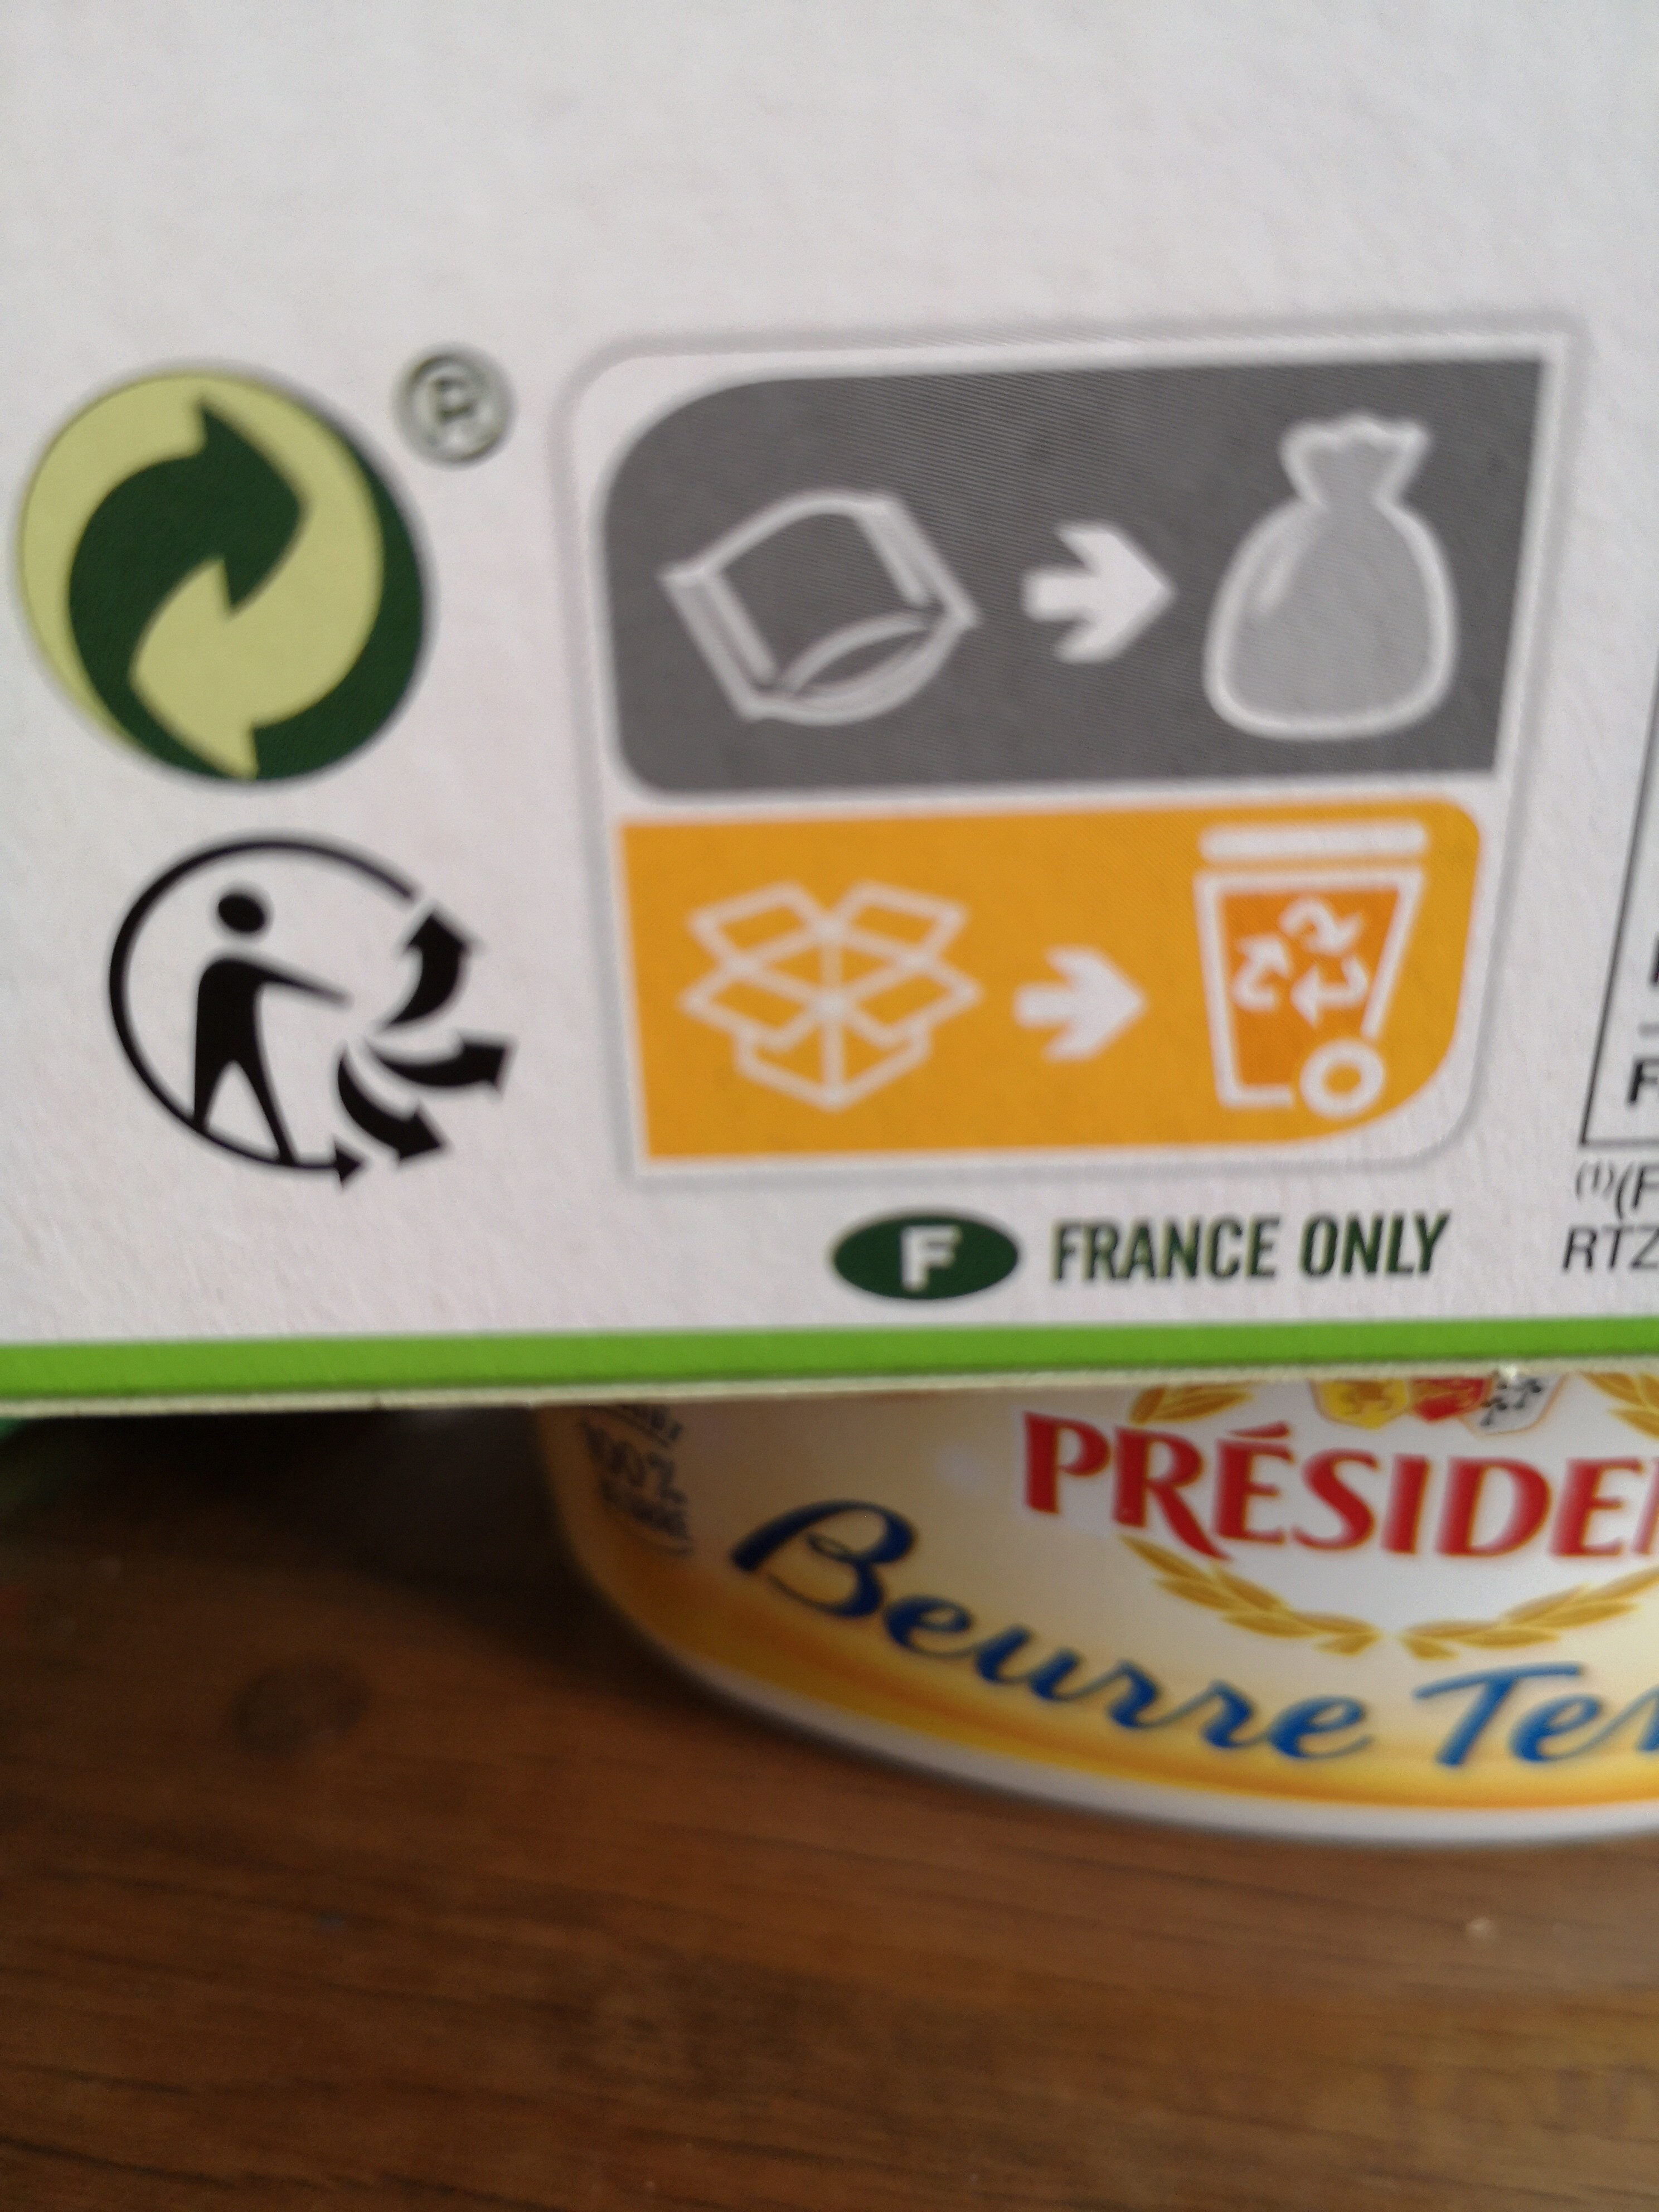 Tartines craquantes au sarrasin - Instruccions de reciclatge i/o informació d’embalatge - fr